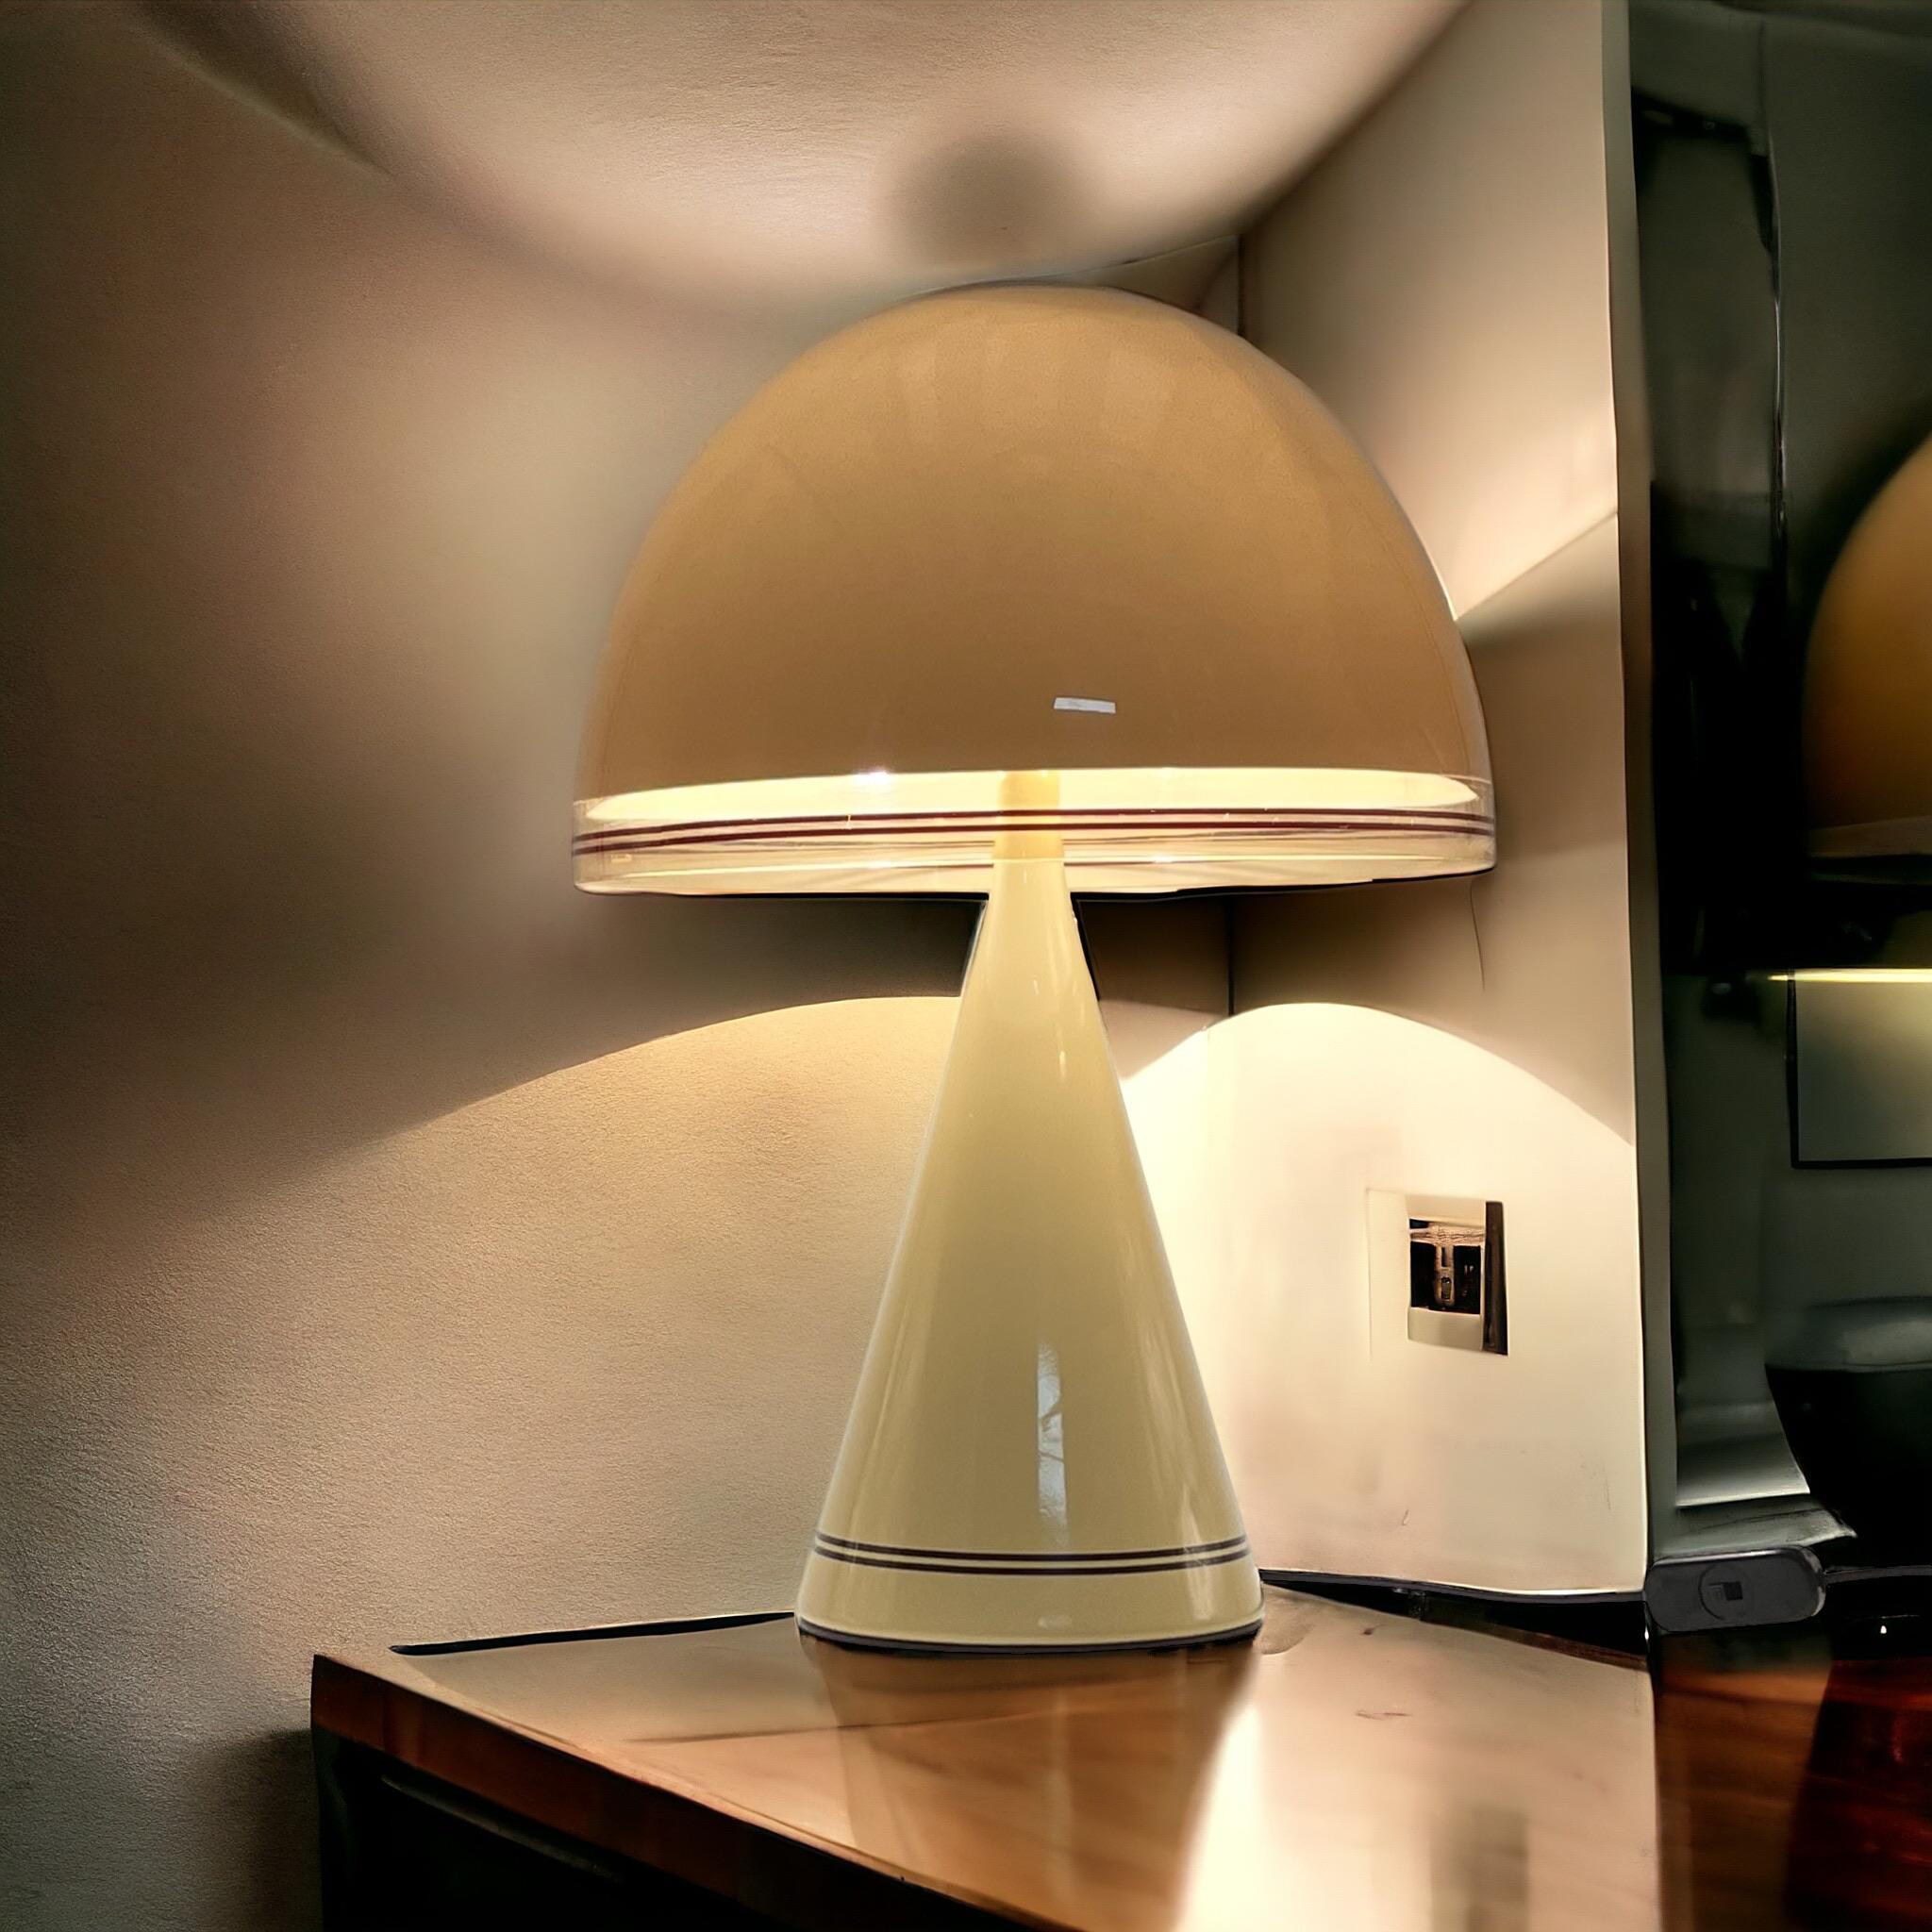 Adoptez l'esprit vibrant du design de l'ère spatiale avec cette lampe champignon emblématique des années 70 